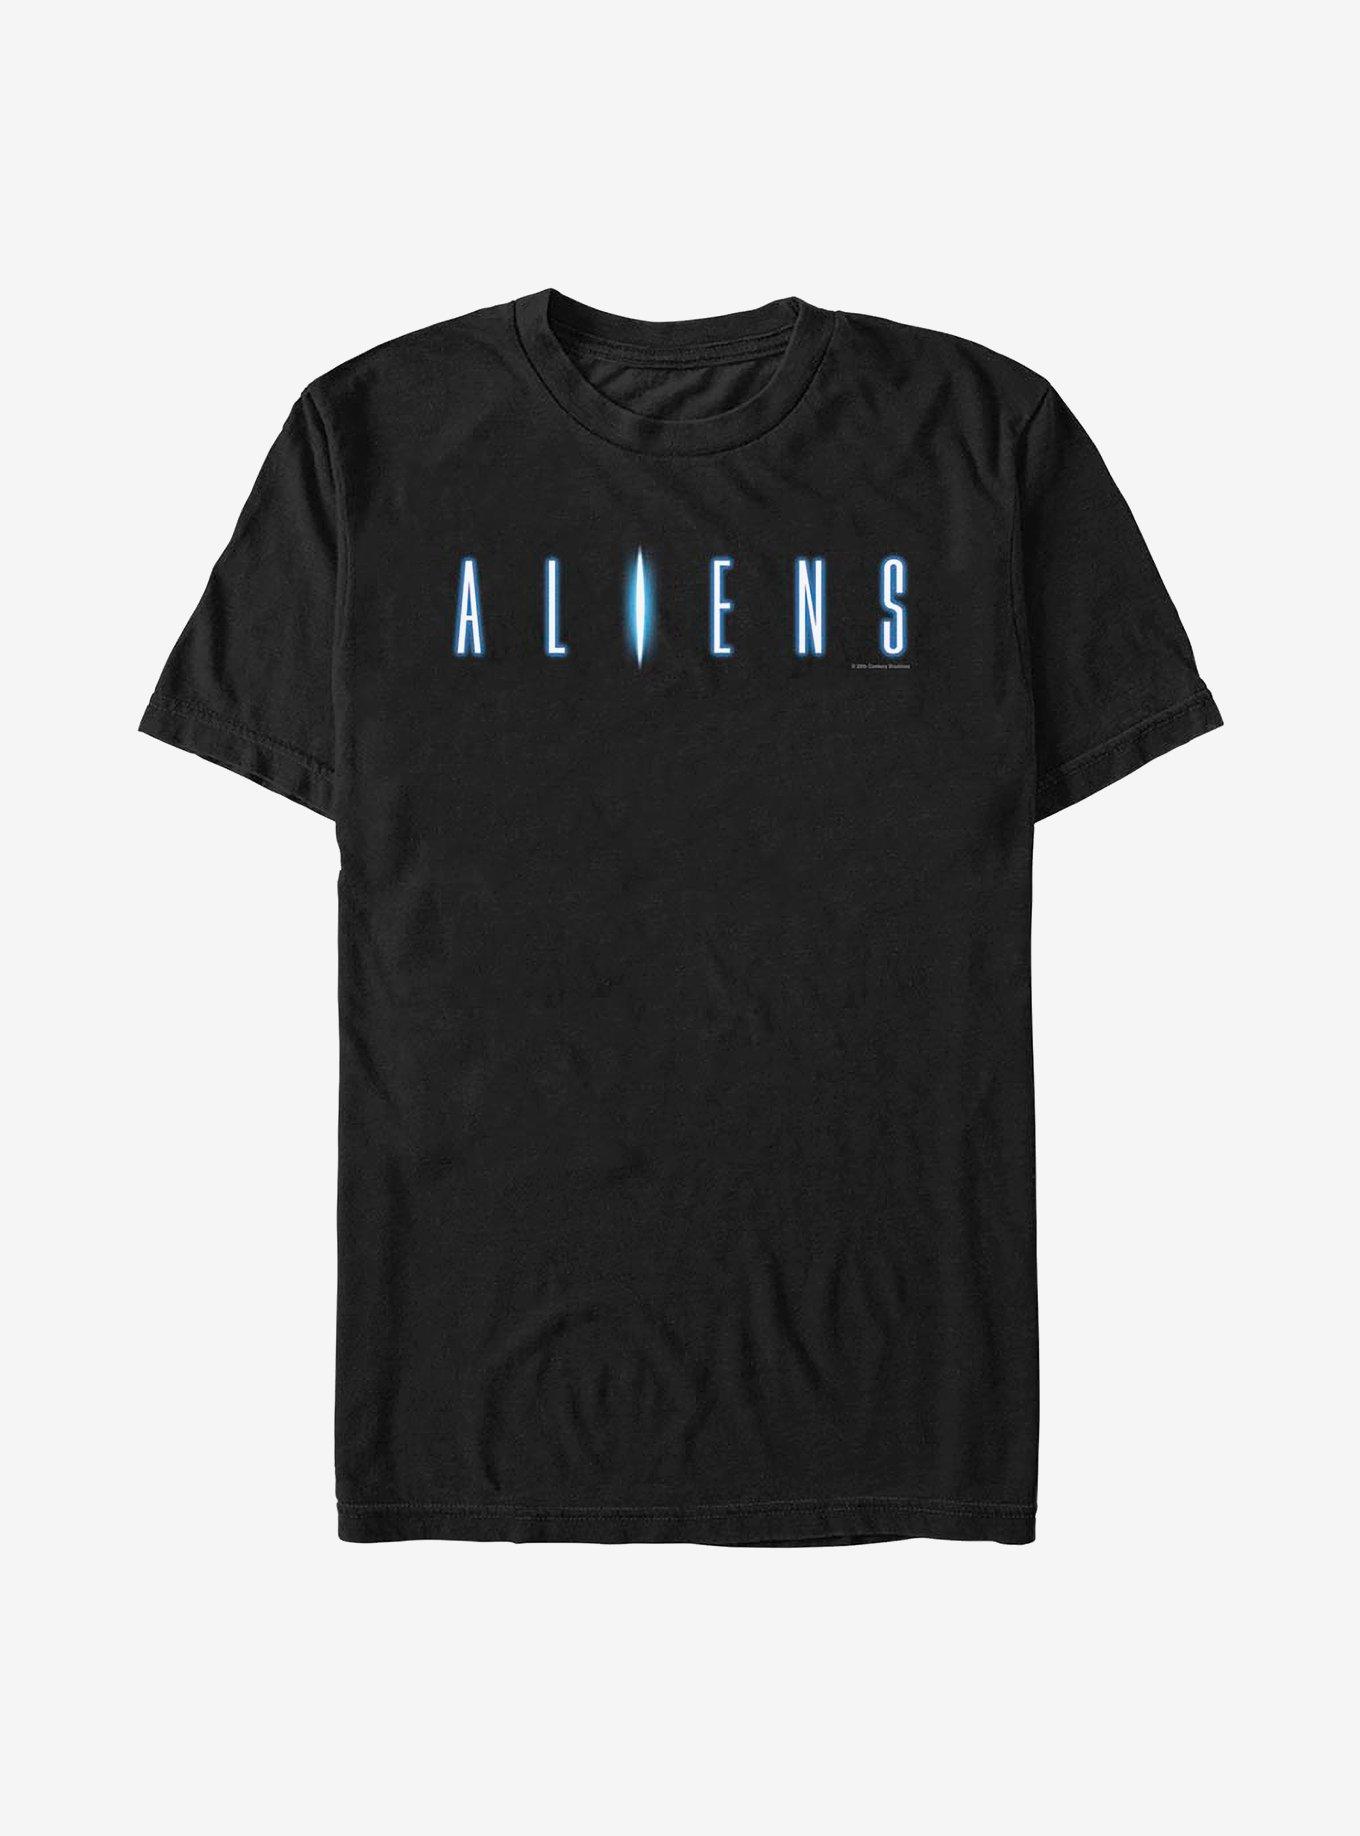 Aliens Logo T-Shirt, BLACK, hi-res